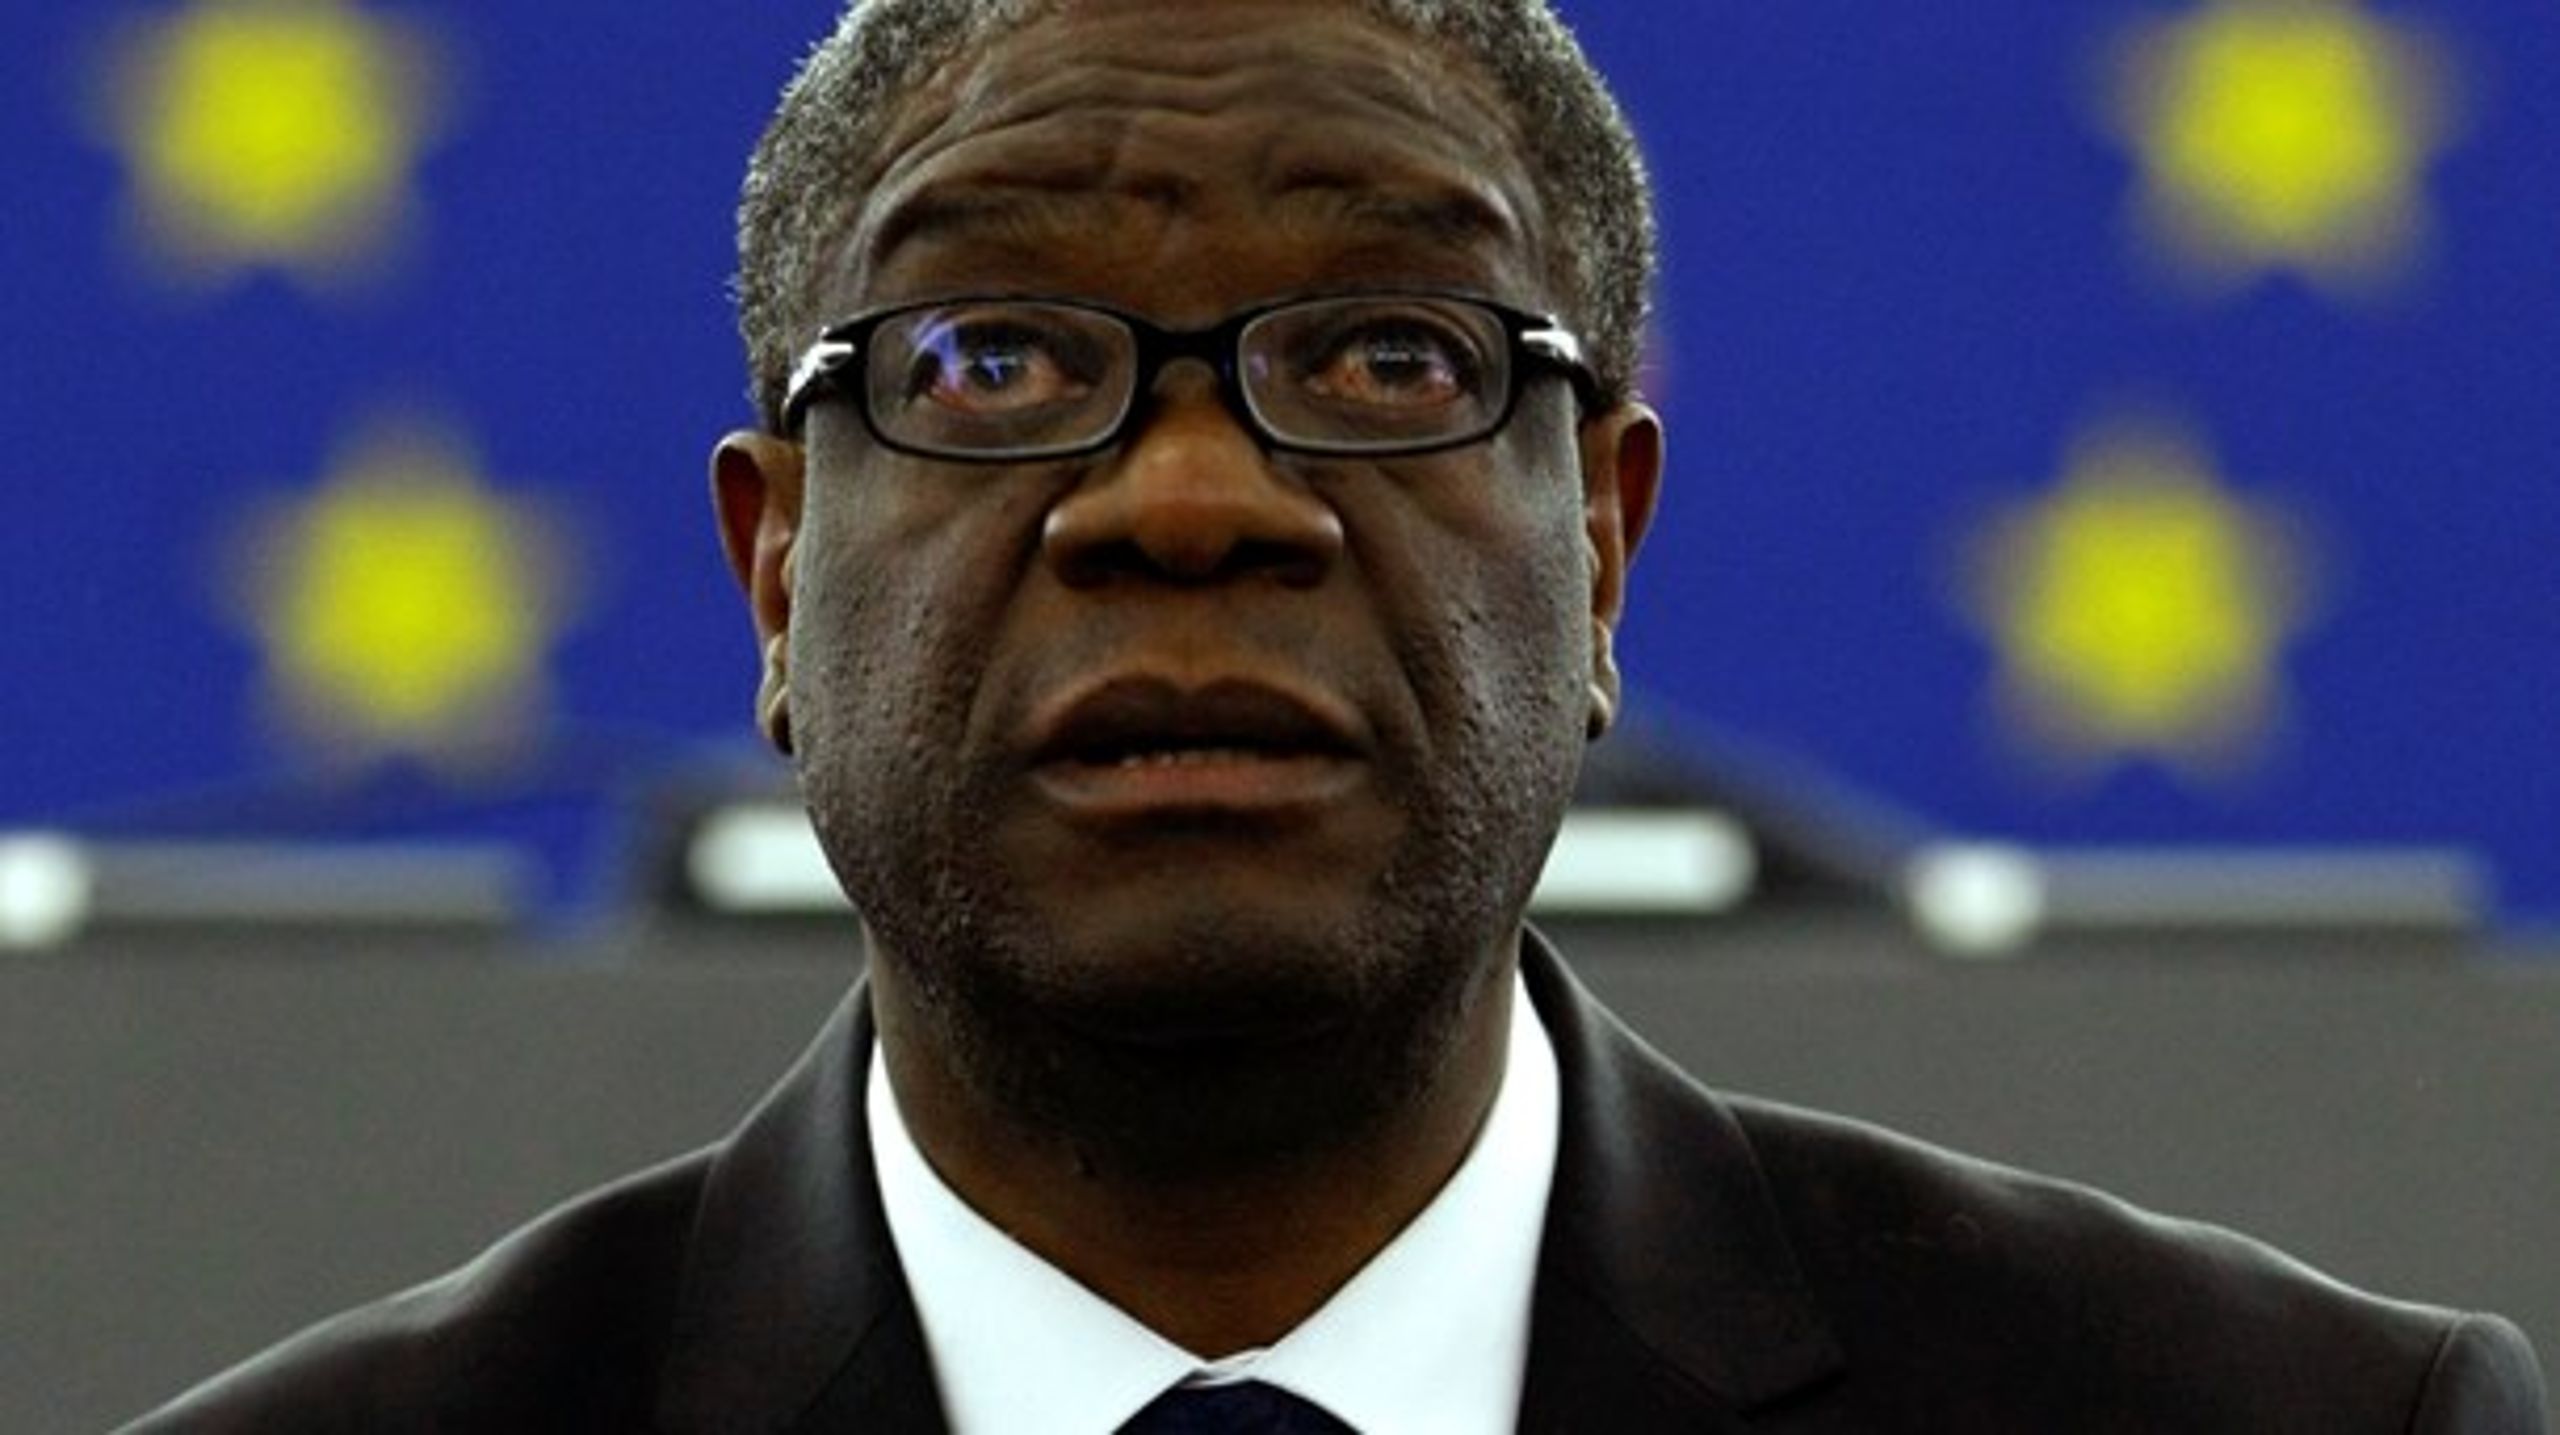 Betydningen af Mukweges varige, dedikerede og uselviske&nbsp;indsats for at bekæmpe krigsforbrydelser kan ikke overvurderes, skriver Den Norske Nobelkomite.&nbsp;